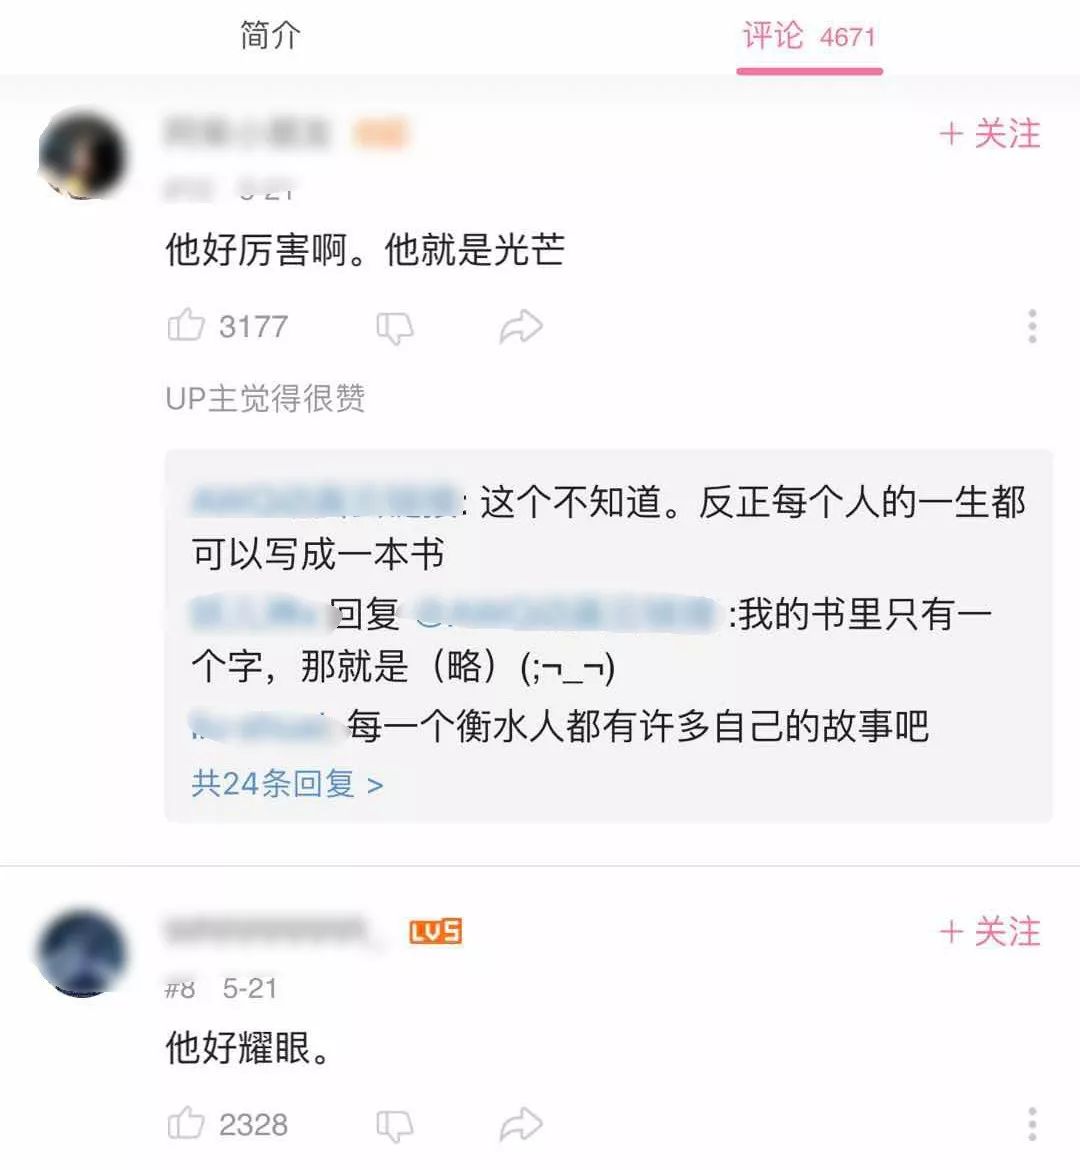 衡水中学学生励志演讲火爆全网_张锡锋